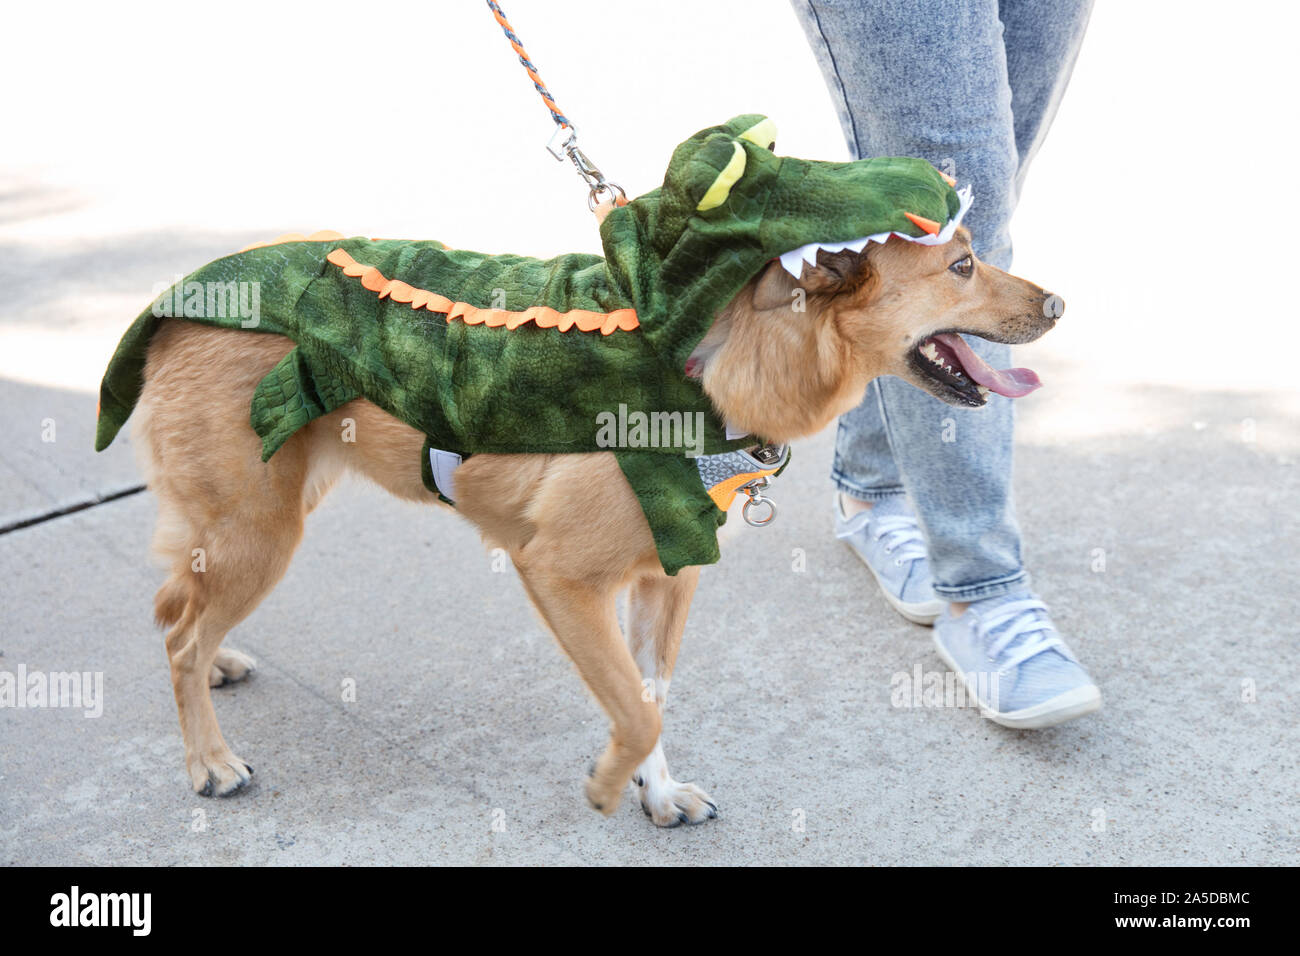 Dallas, EE.UU. 19 Oct, 2019. Un perro viste un traje del cocodrilo durante un perro festival en Richardson, un suburbio de la ciudad de Dallas, Texas, Estados Unidos, 19 de octubre, 2019. El perro festival celebrado en Richardson el sábado atrajo a muchos de los ciudadanos locales para vestir a sus perros hasta asistir al concurso de disfraces de perro. Crédito: Tian Dan/Xinhua/Alamy Live News Foto de stock